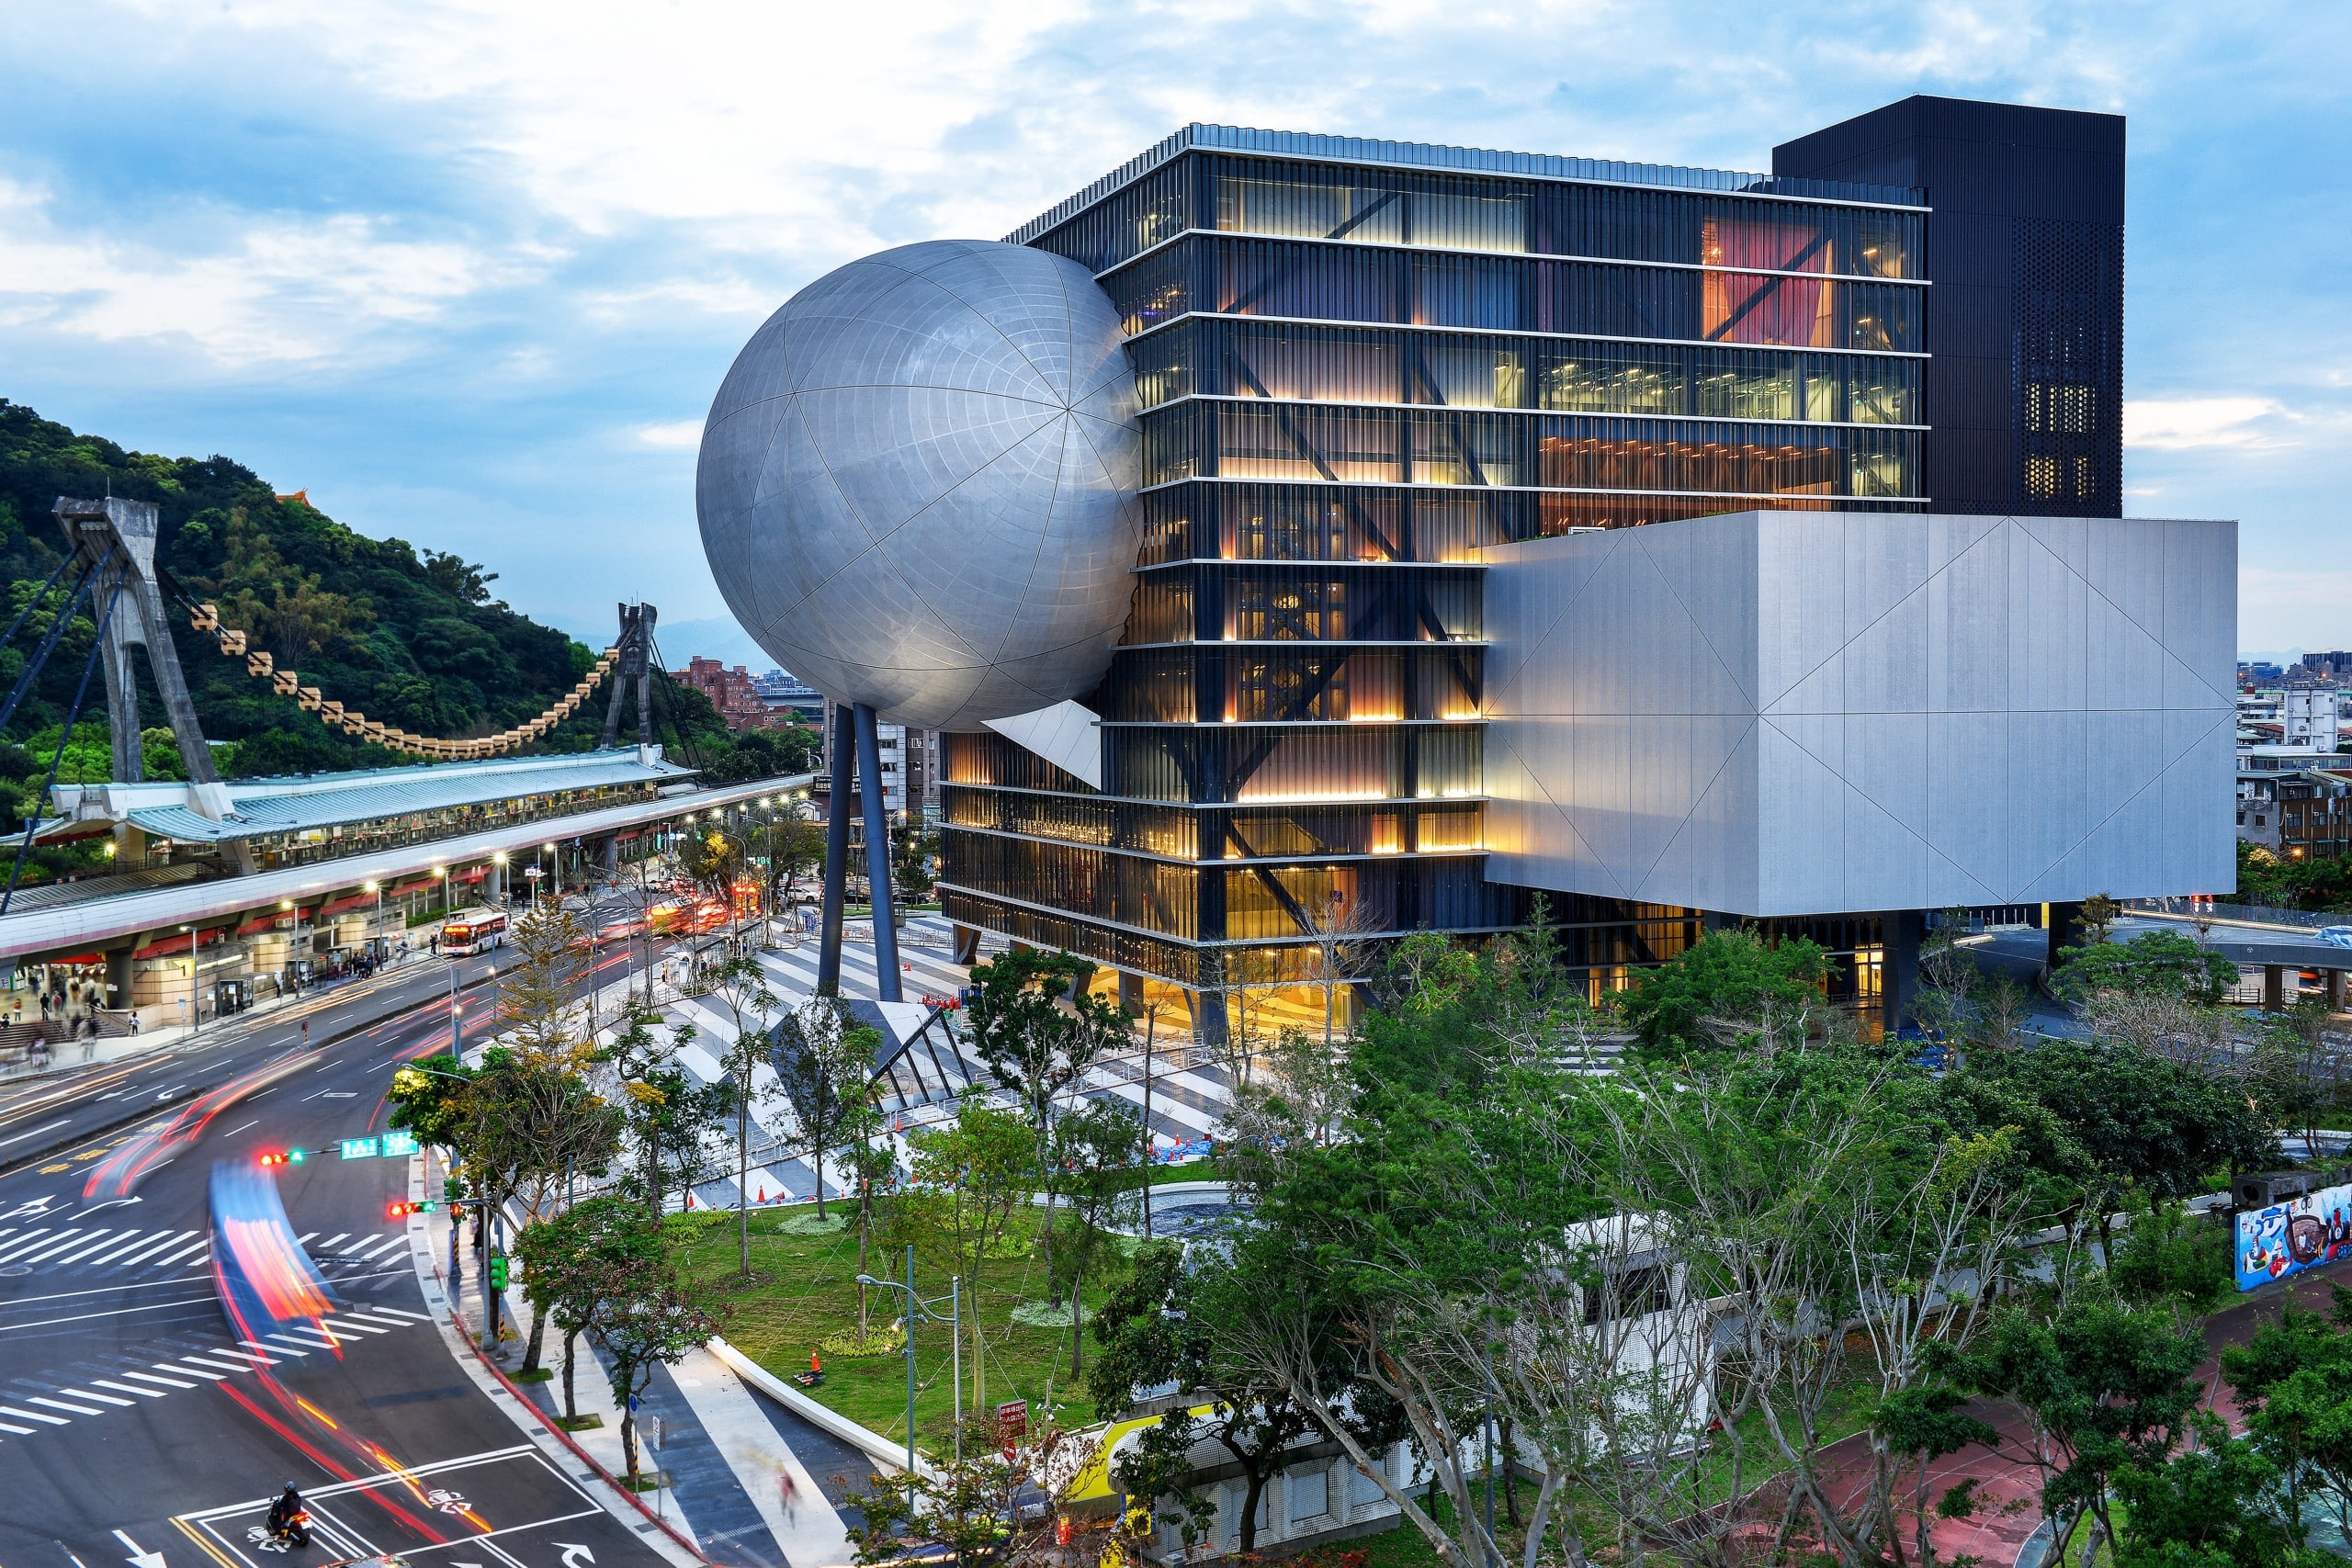 Das Taipei Performing Arts Center soll das Theater als öffentlichen Kulturort für jeden erlebbar machen, ohne dass der Besuch einer Aufführung erforderlich ist. Foto: © Chris Stowers Photography